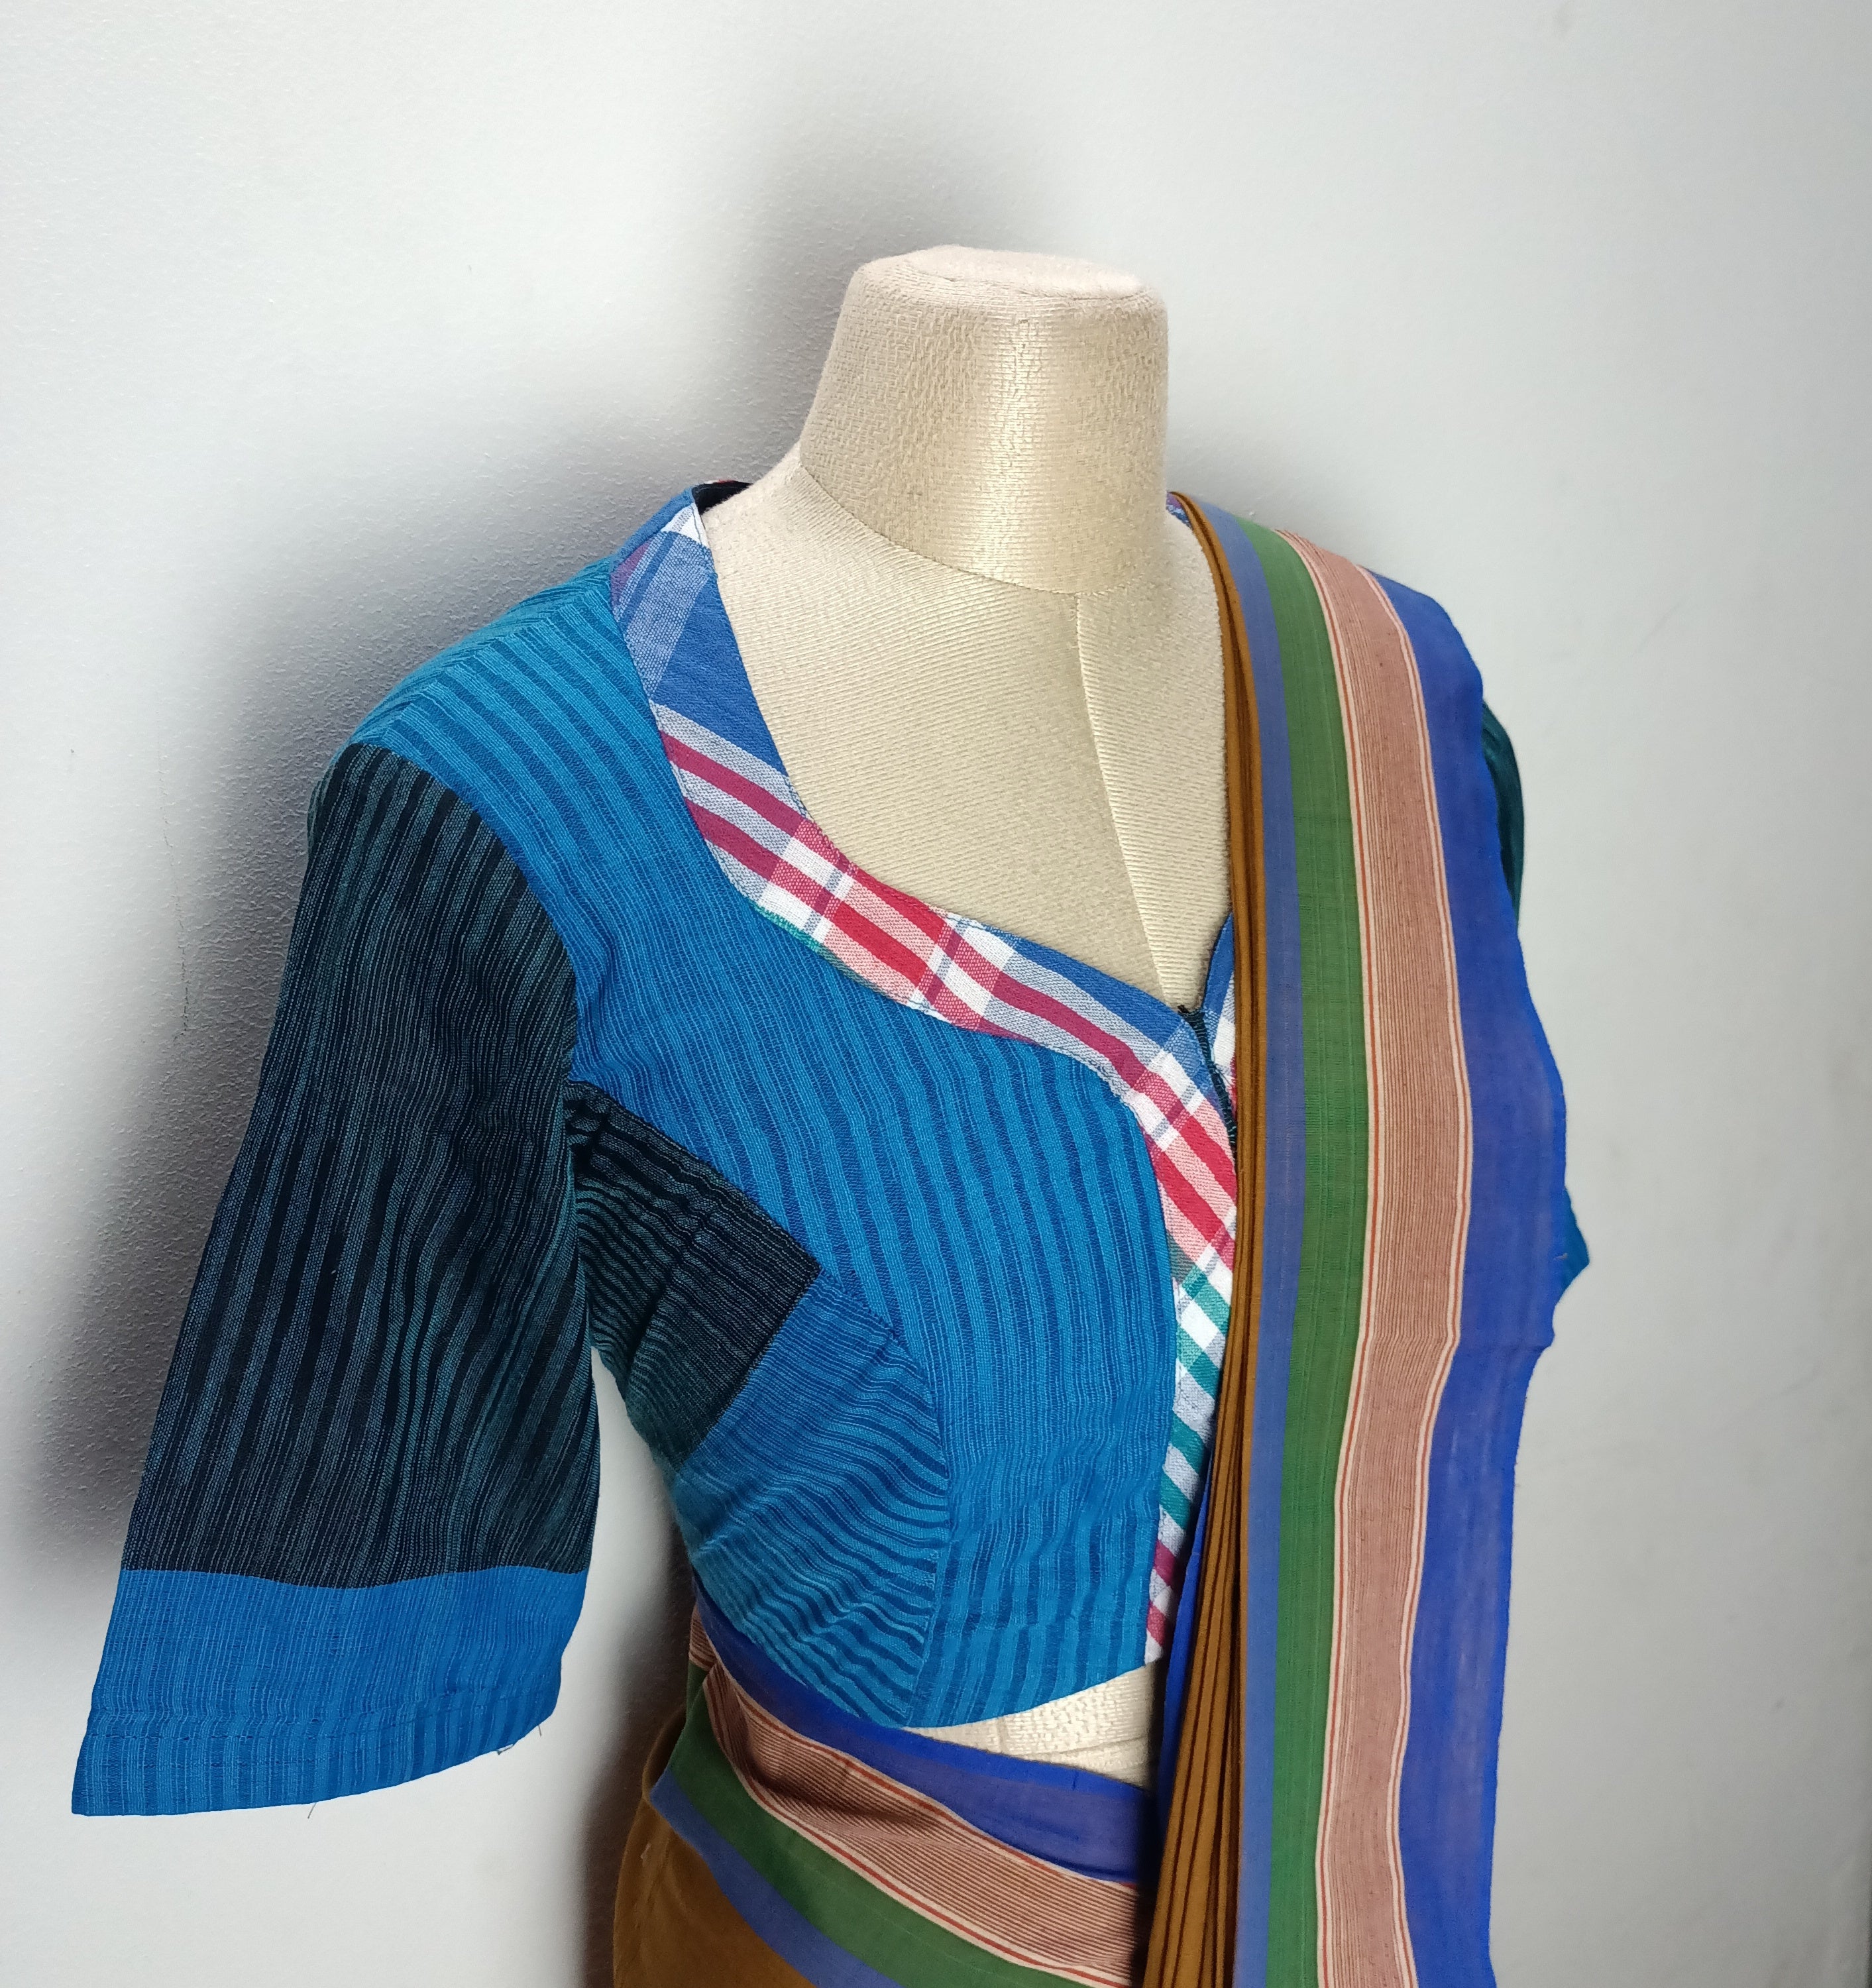 Umbara desaigns - SAREE BLOUSE COMBO ilkal saree with gamcha blouse